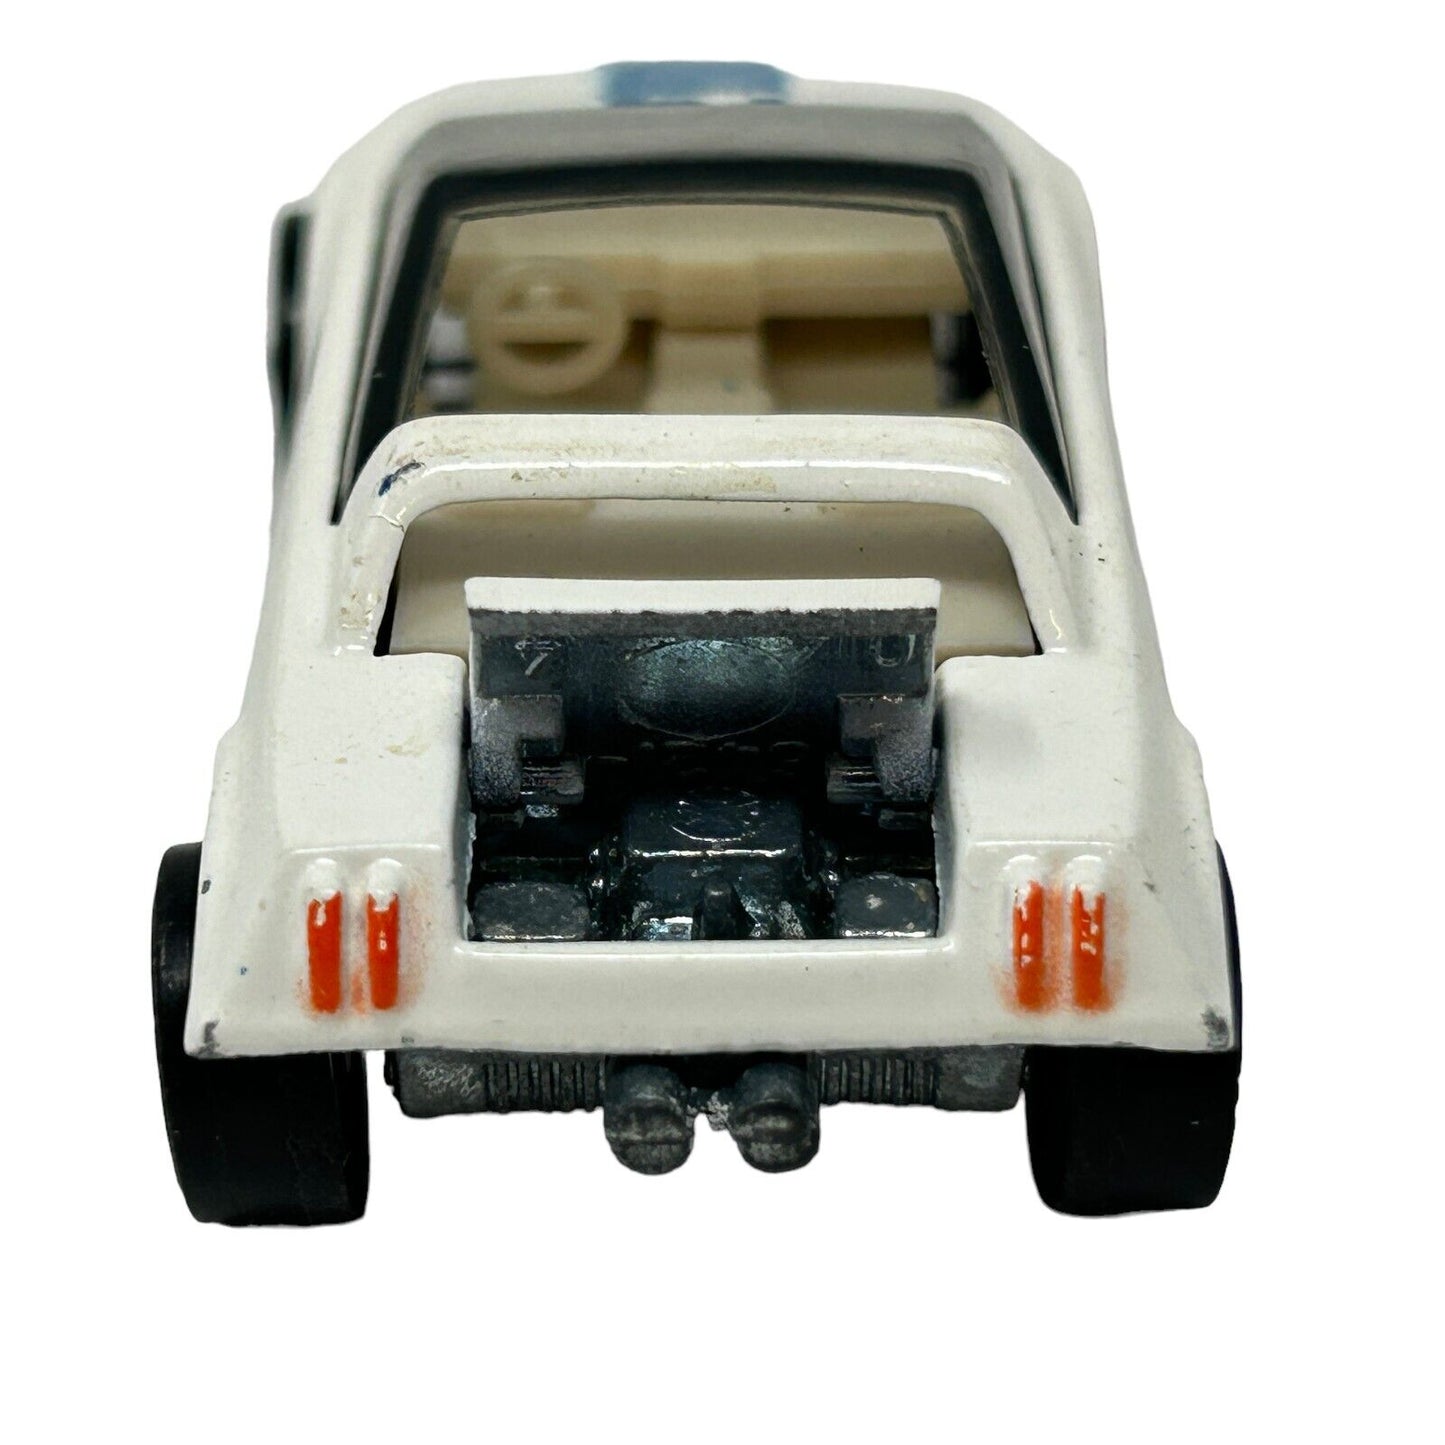 Hot Wheels Jack Rabbit Special Redline Diecast Car White Interior Vintage 1970